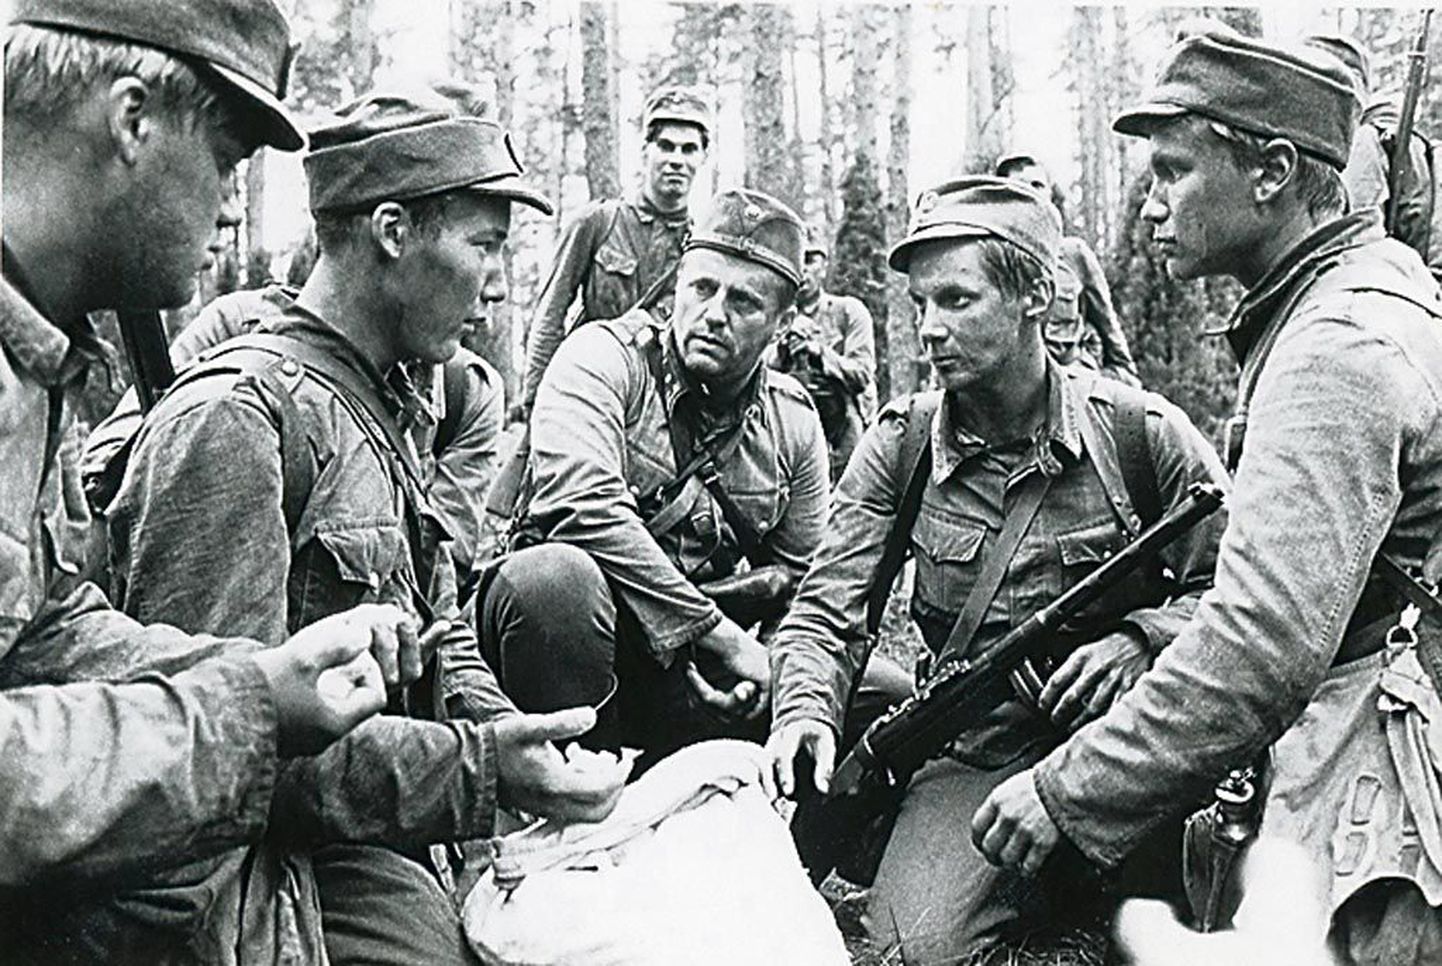 Soome film “Tundmatu sõdur” keskendub lihtsõduri argivõitlusele ja hirmudele.